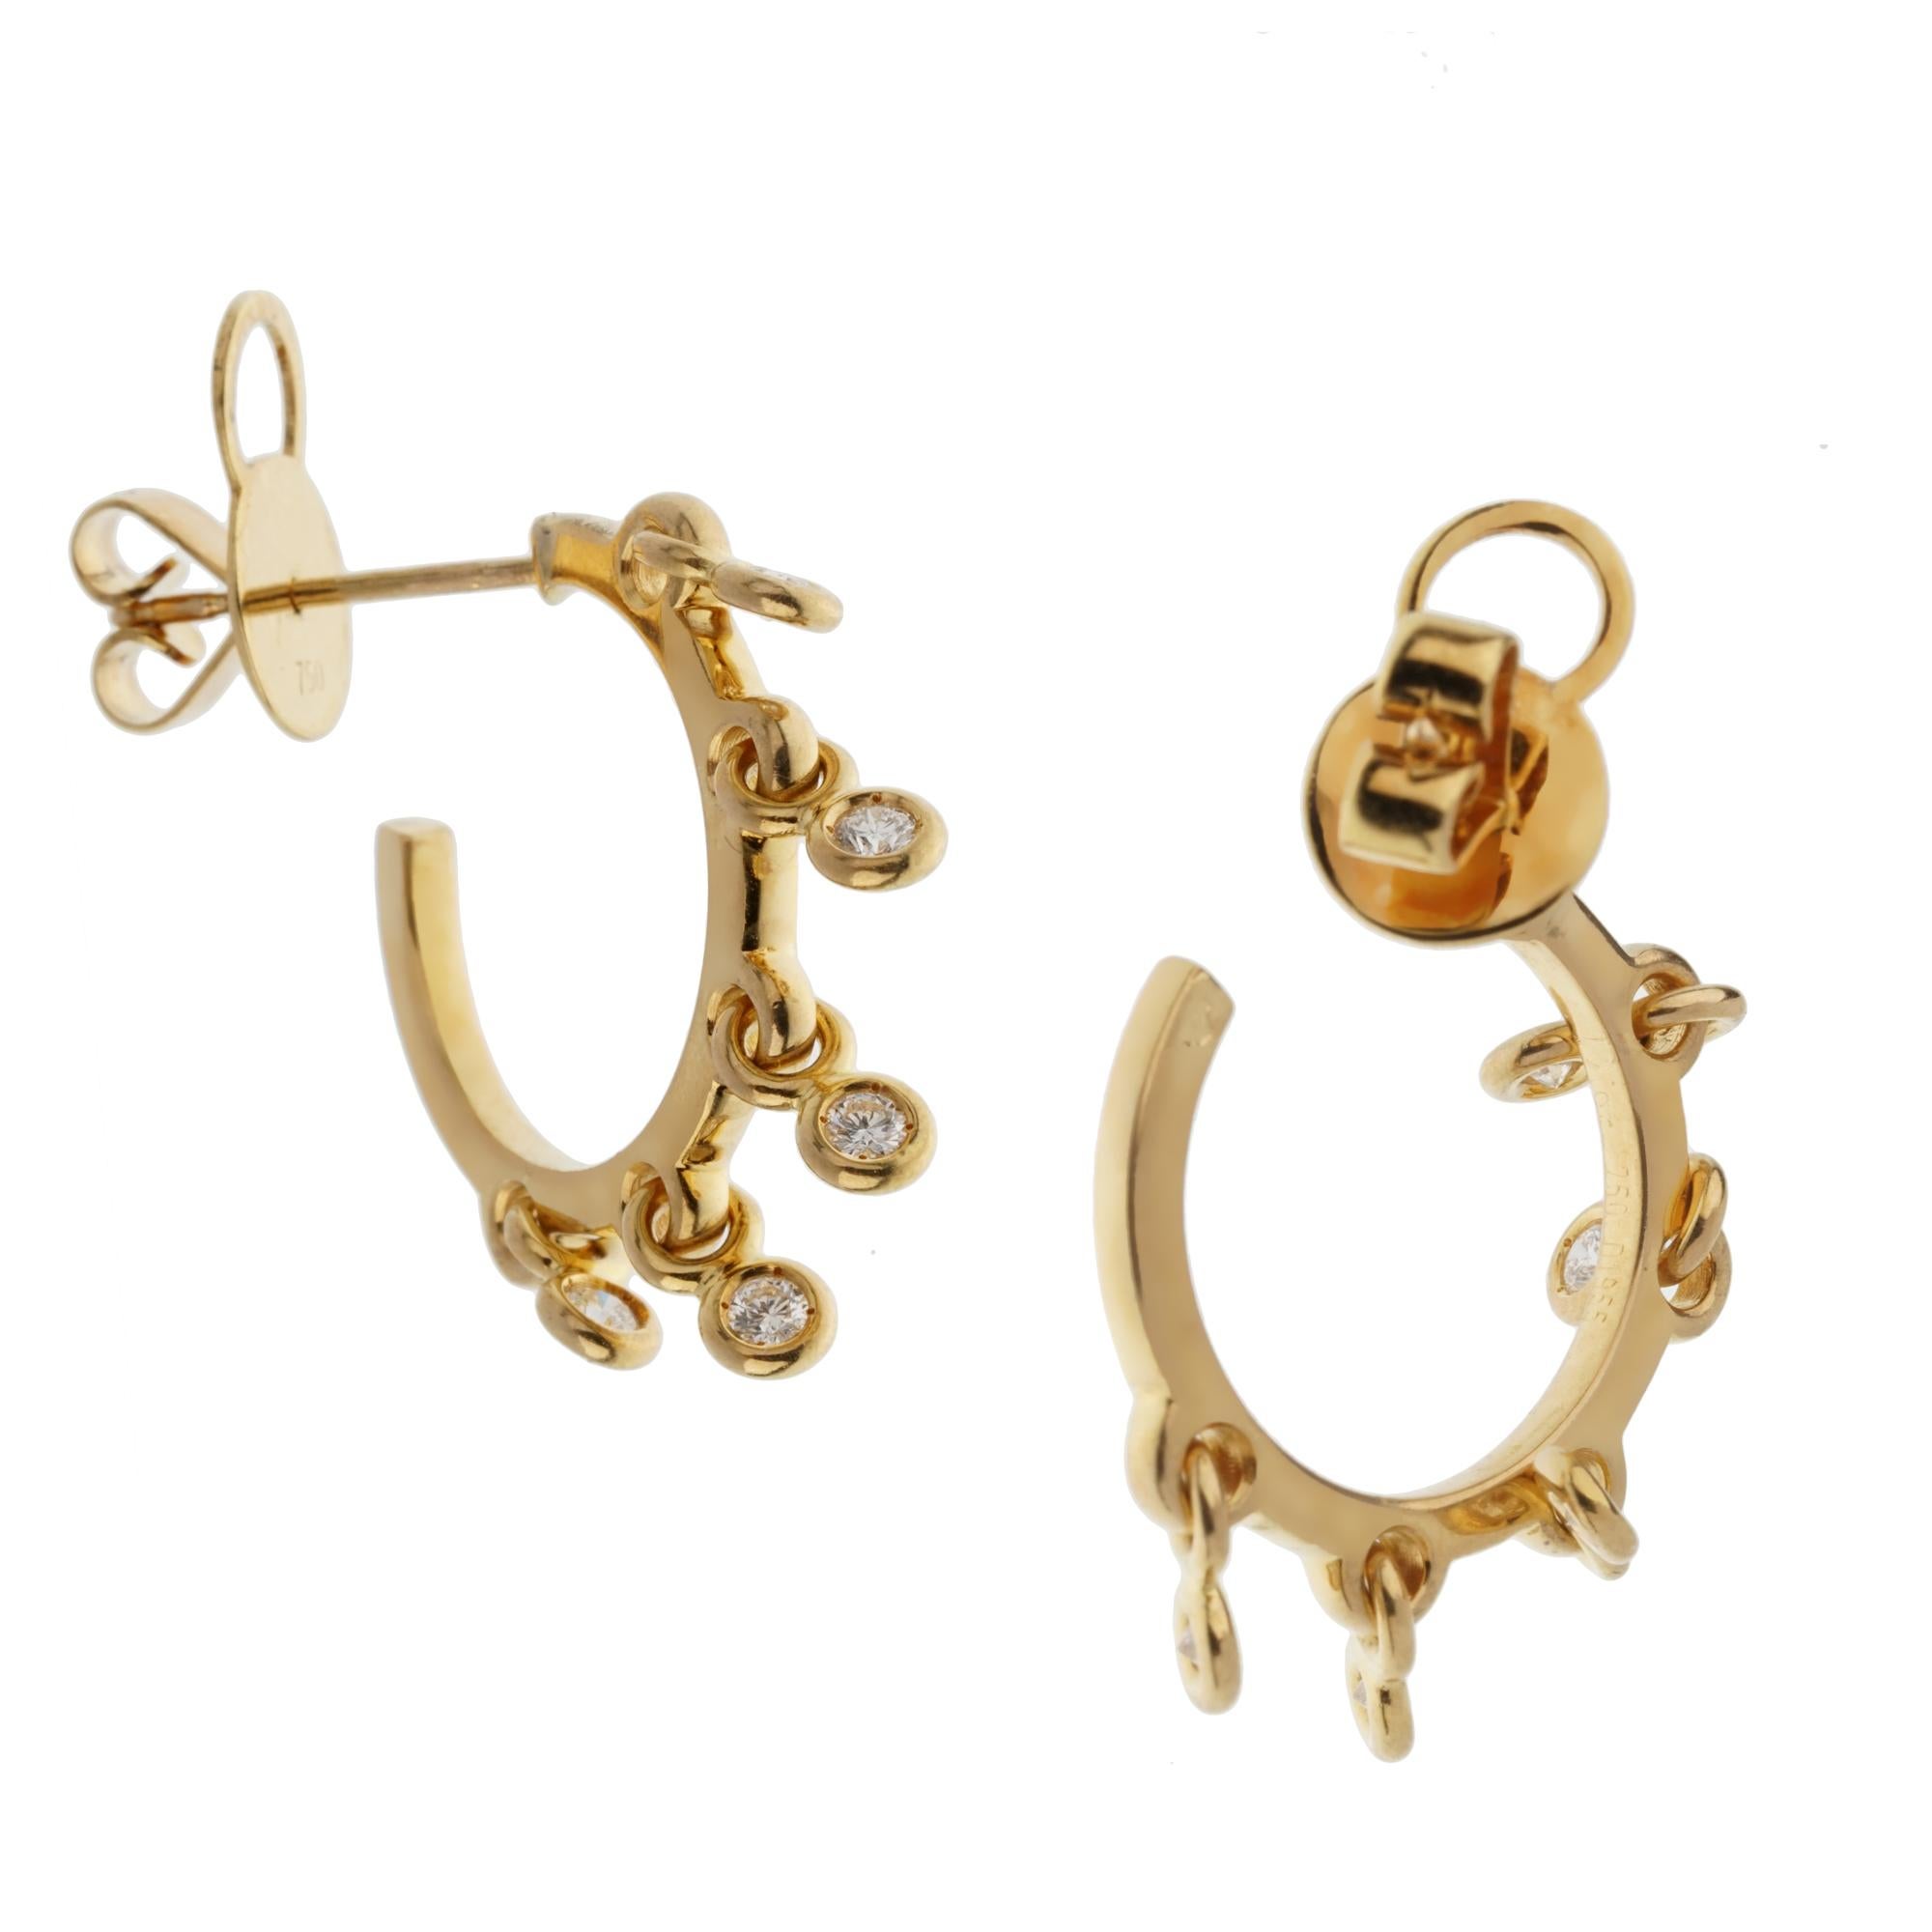 Une paire de boucles d'oreilles chic en diamant Christian Dior, avec 10 diamants ronds de taille brillante flottant librement sur un anneau en or jaune 18k. Les diamants ont un poids total de .30ct et mesurent 3/4